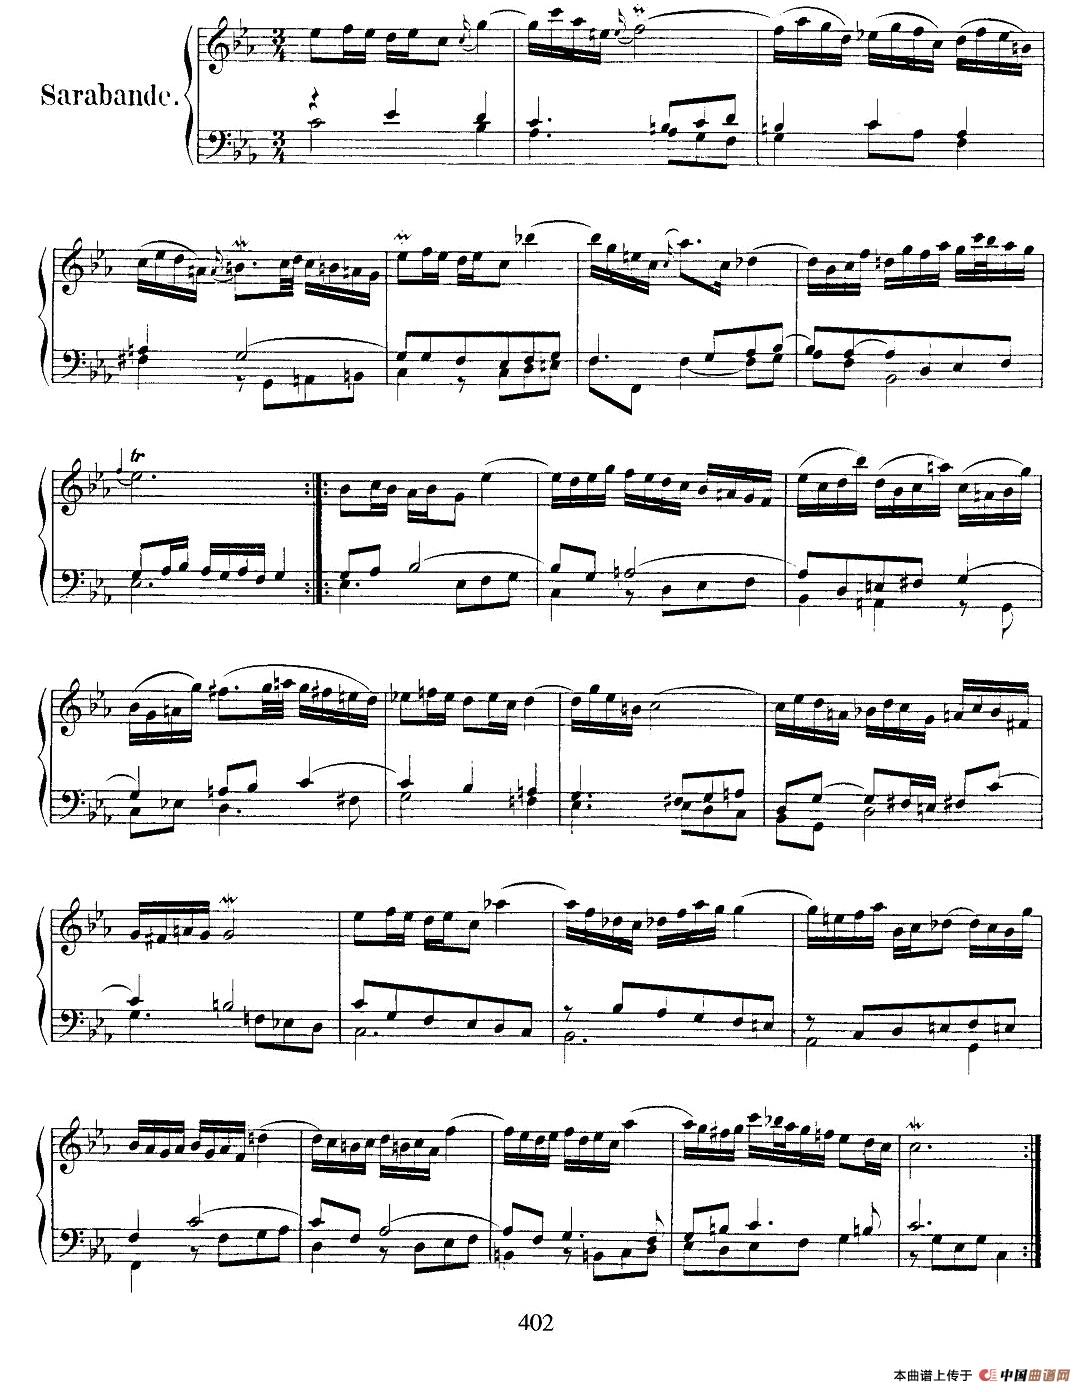 《法国组曲之二：c小调》钢琴曲谱图分享